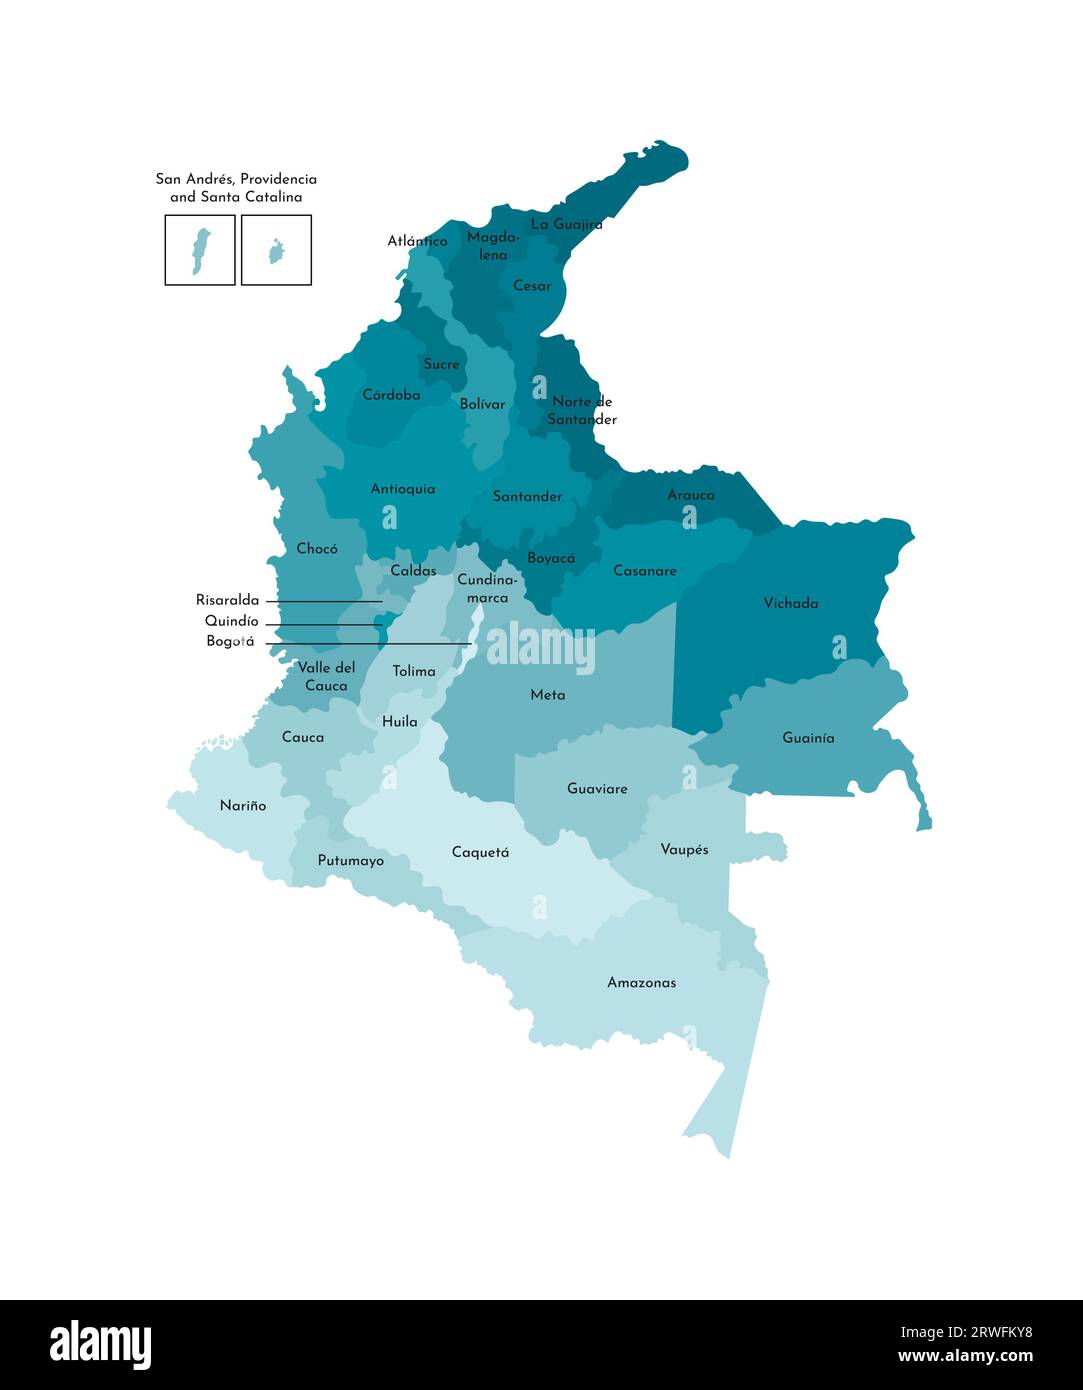 Illustrazione vettoriale isolata della mappa amministrativa semplificata della Colombia. Confini e nomi dei dipartimenti (regioni). Sagoma kaki blu colorato Illustrazione Vettoriale